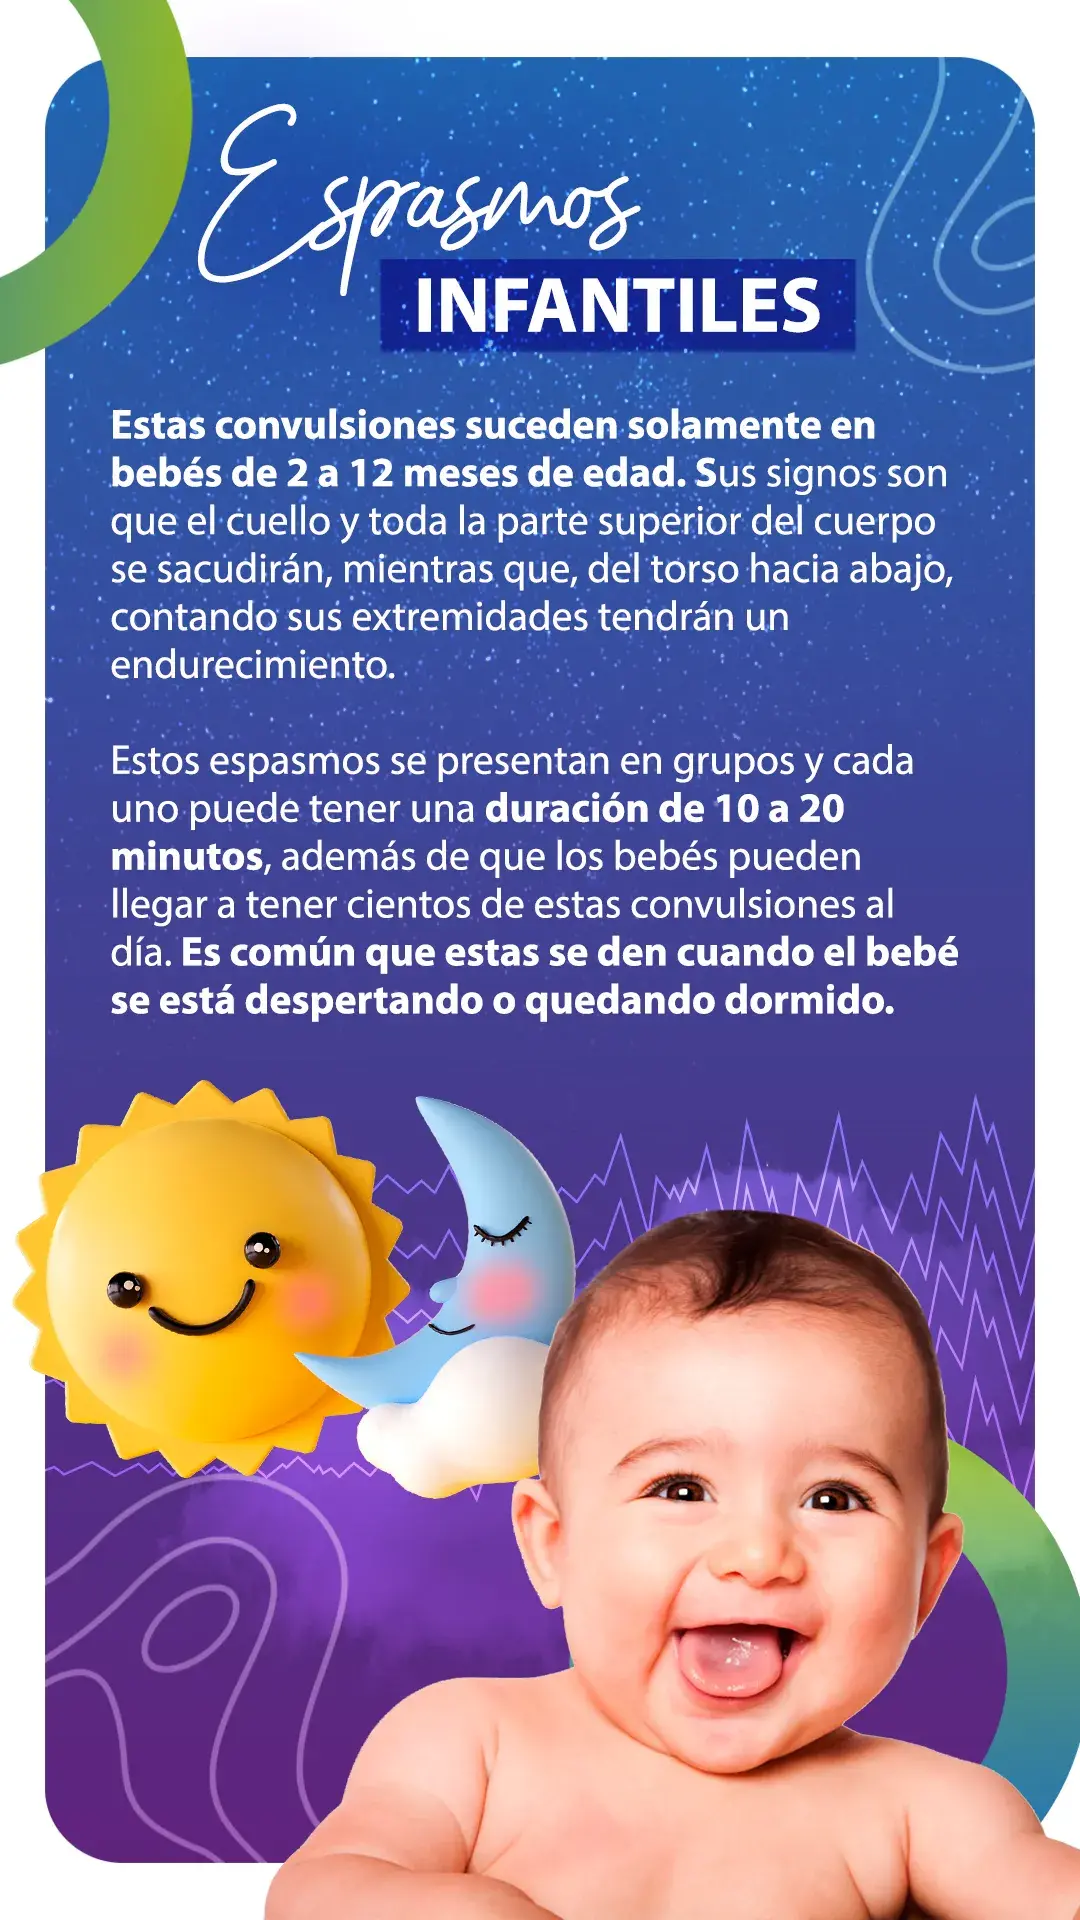 Los espasmos infantiles suceden en bebés de 2 a 12 meses.